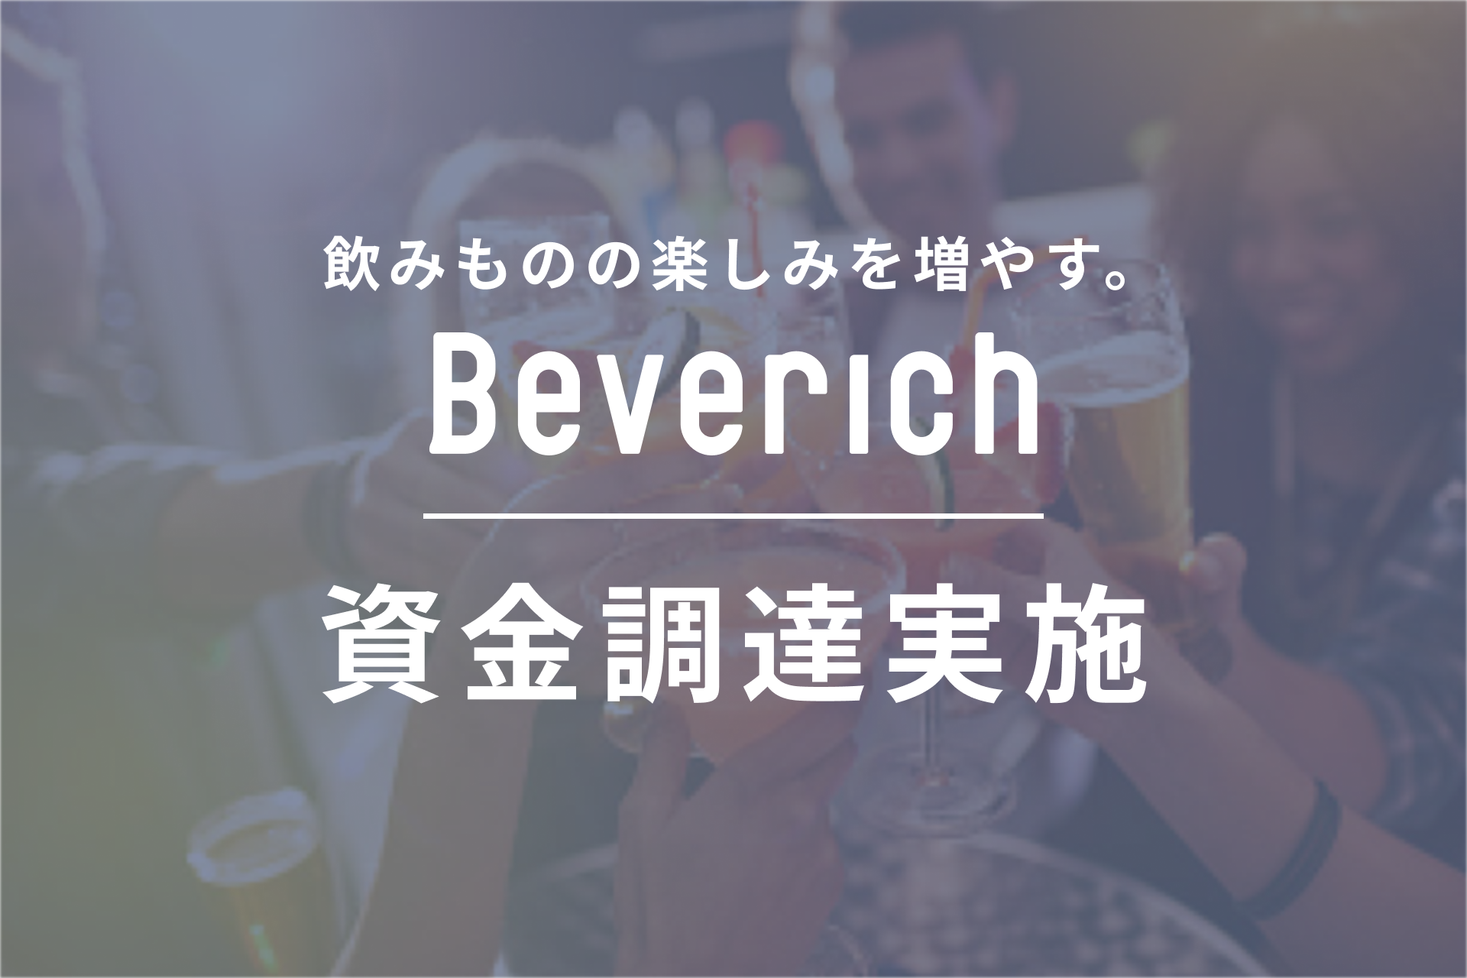 Beverich プレスリリース